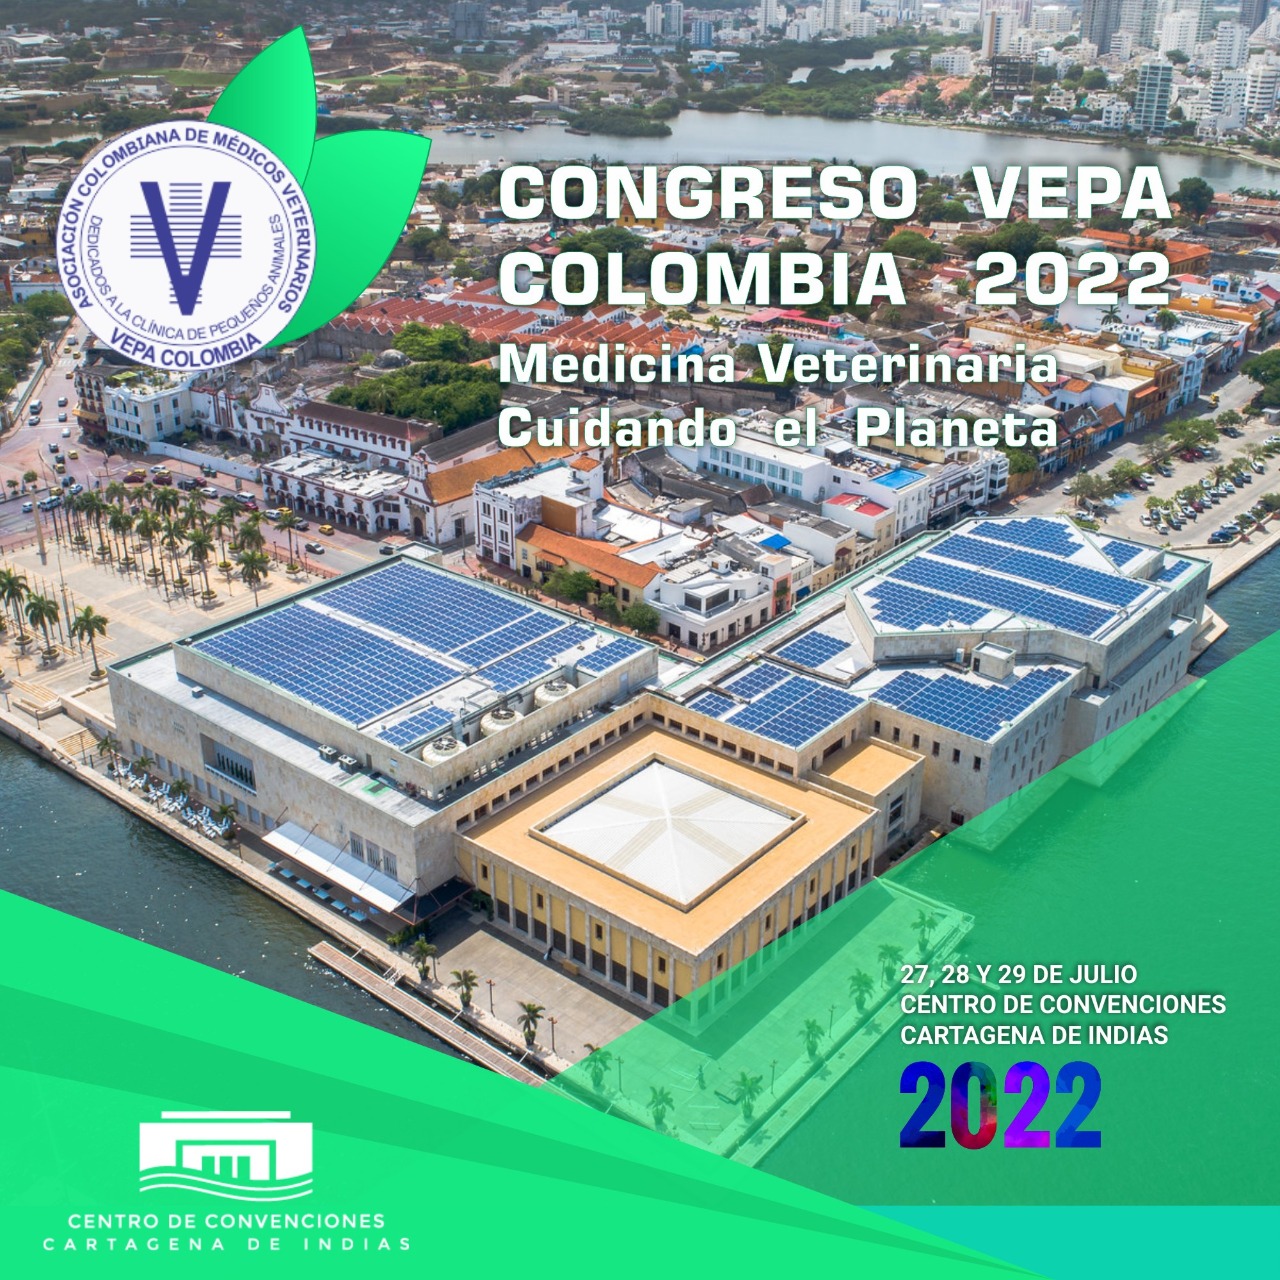  Congreso VEPA Colombia contará con Sala de Grooming